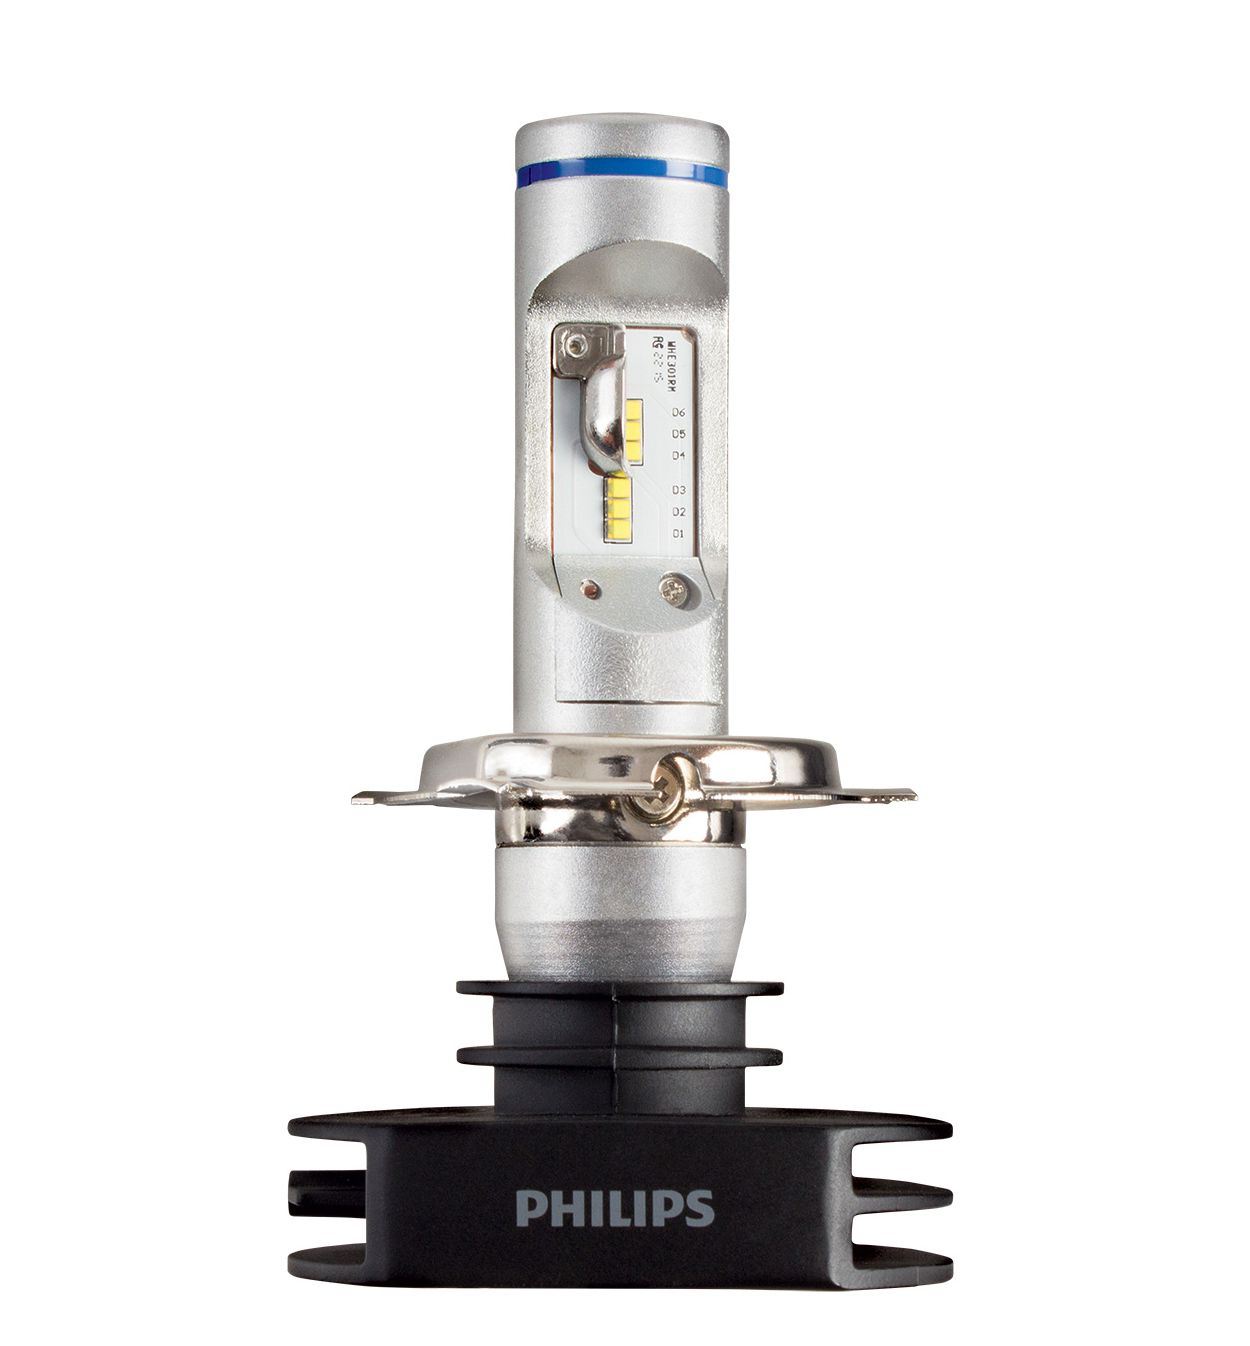 X-tremeUltinon LED ヘッドランプ用バルブ<br> 12953BWX2 | Philips